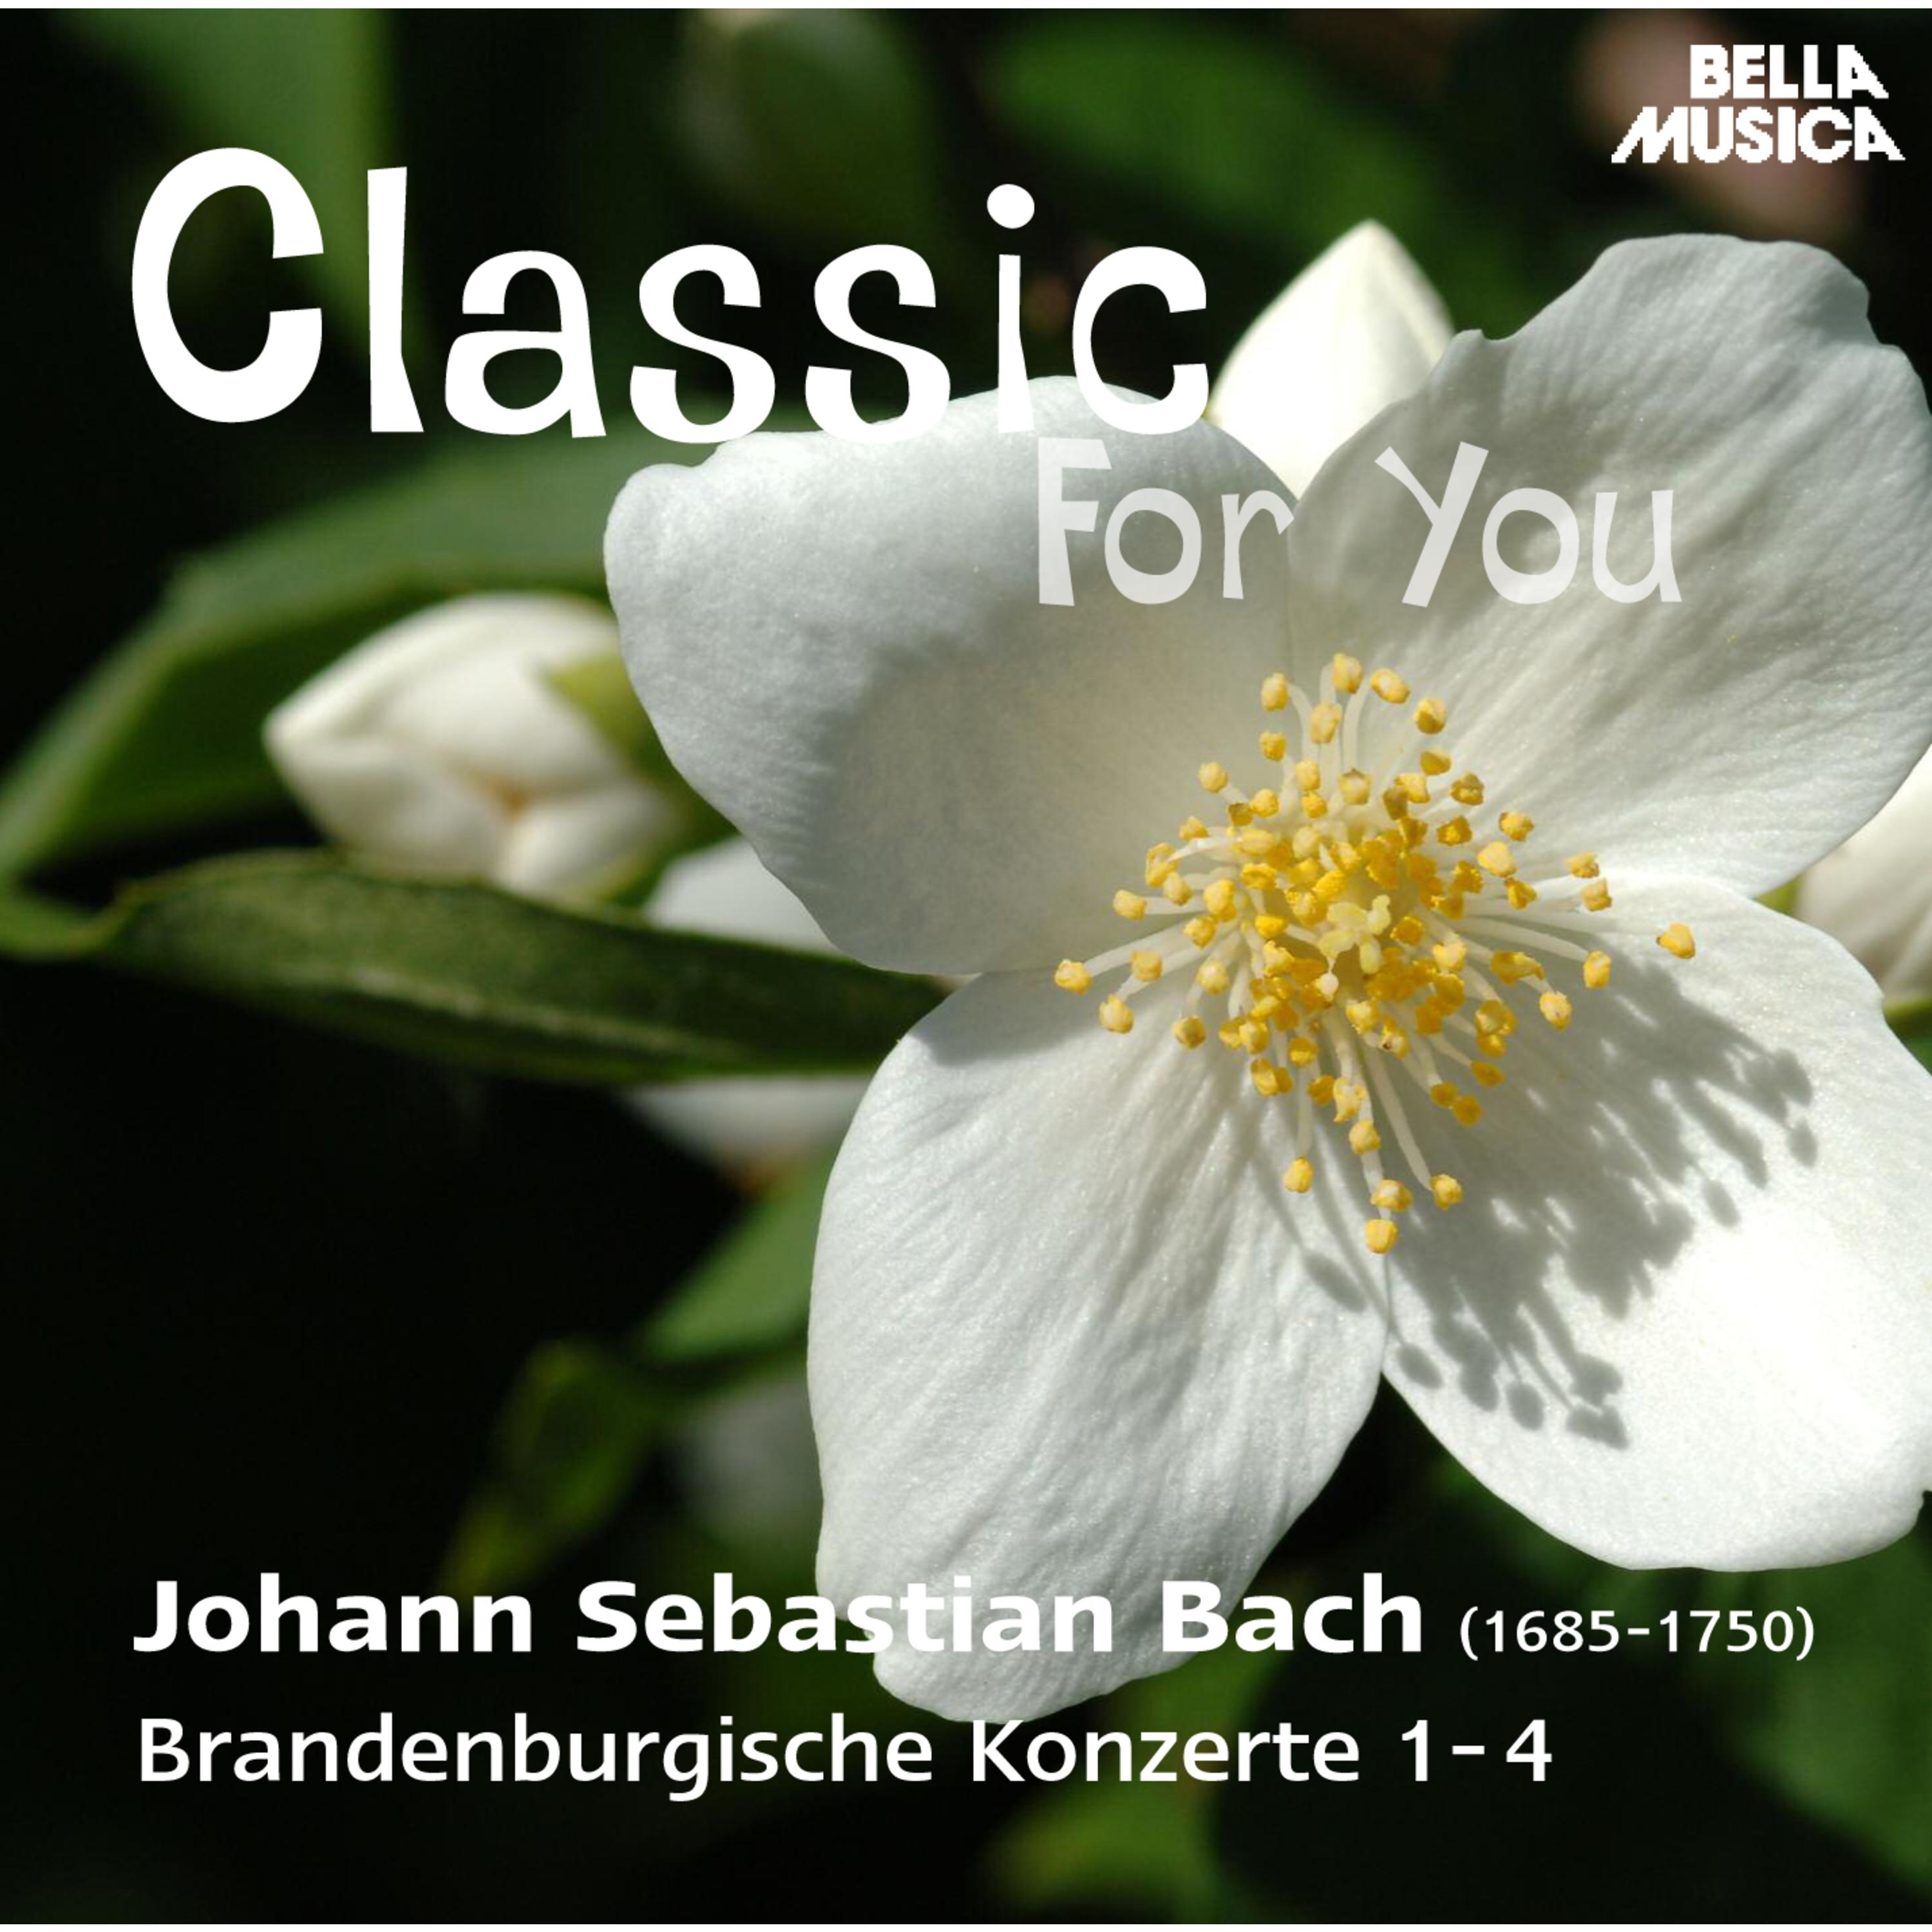 Brandenburgisches Konzert in F Major, BWV 1046, No. 1: I. Allegro